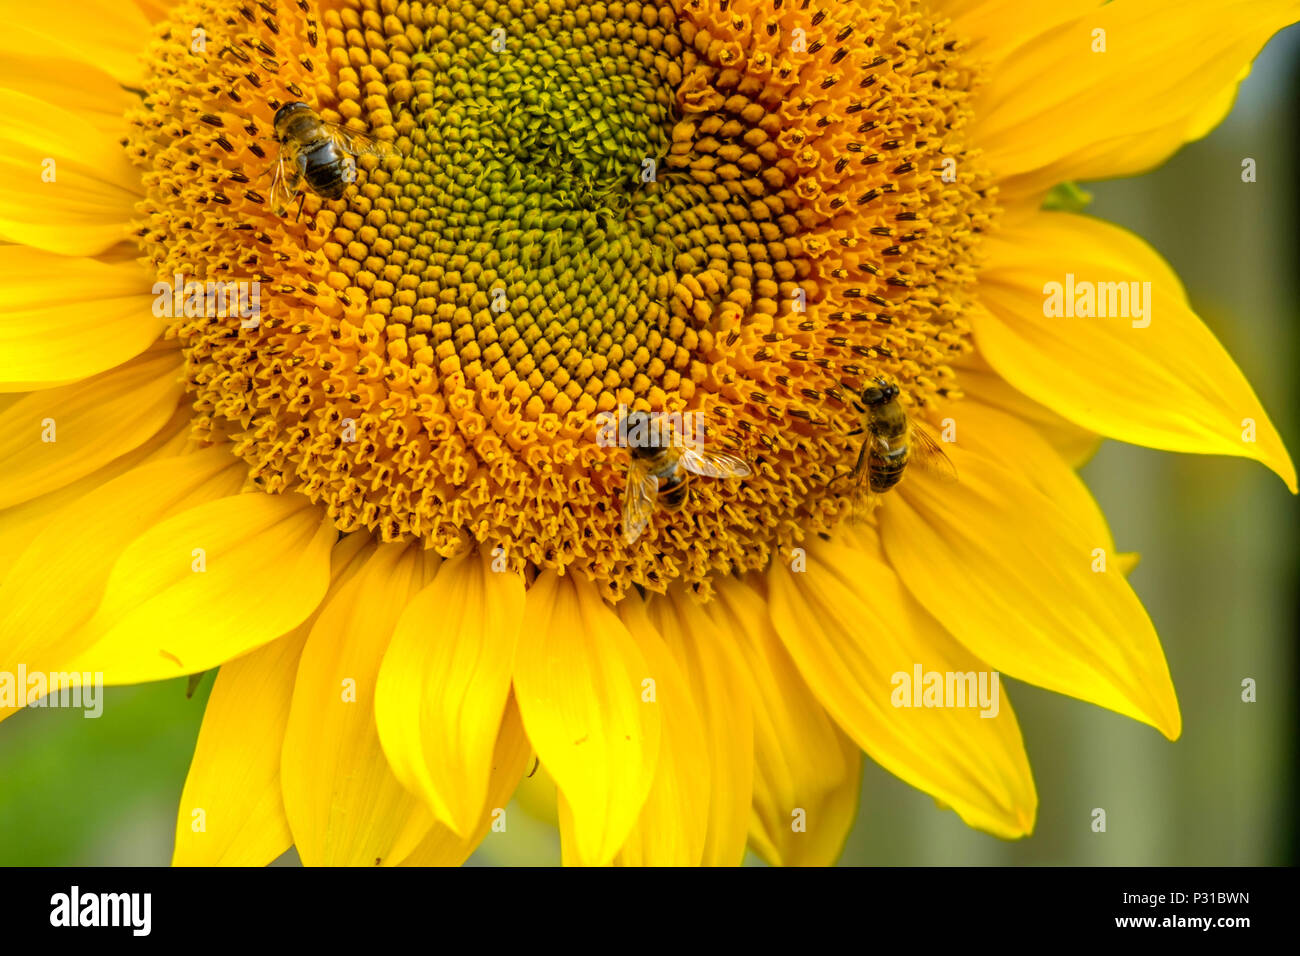 Drei Bienen arbeiten auf einer Sonnenblume in einem Garten im Belgischen Mol. Die Blume blüht und zeigt wunderschöne, helle Farben. Stockfoto